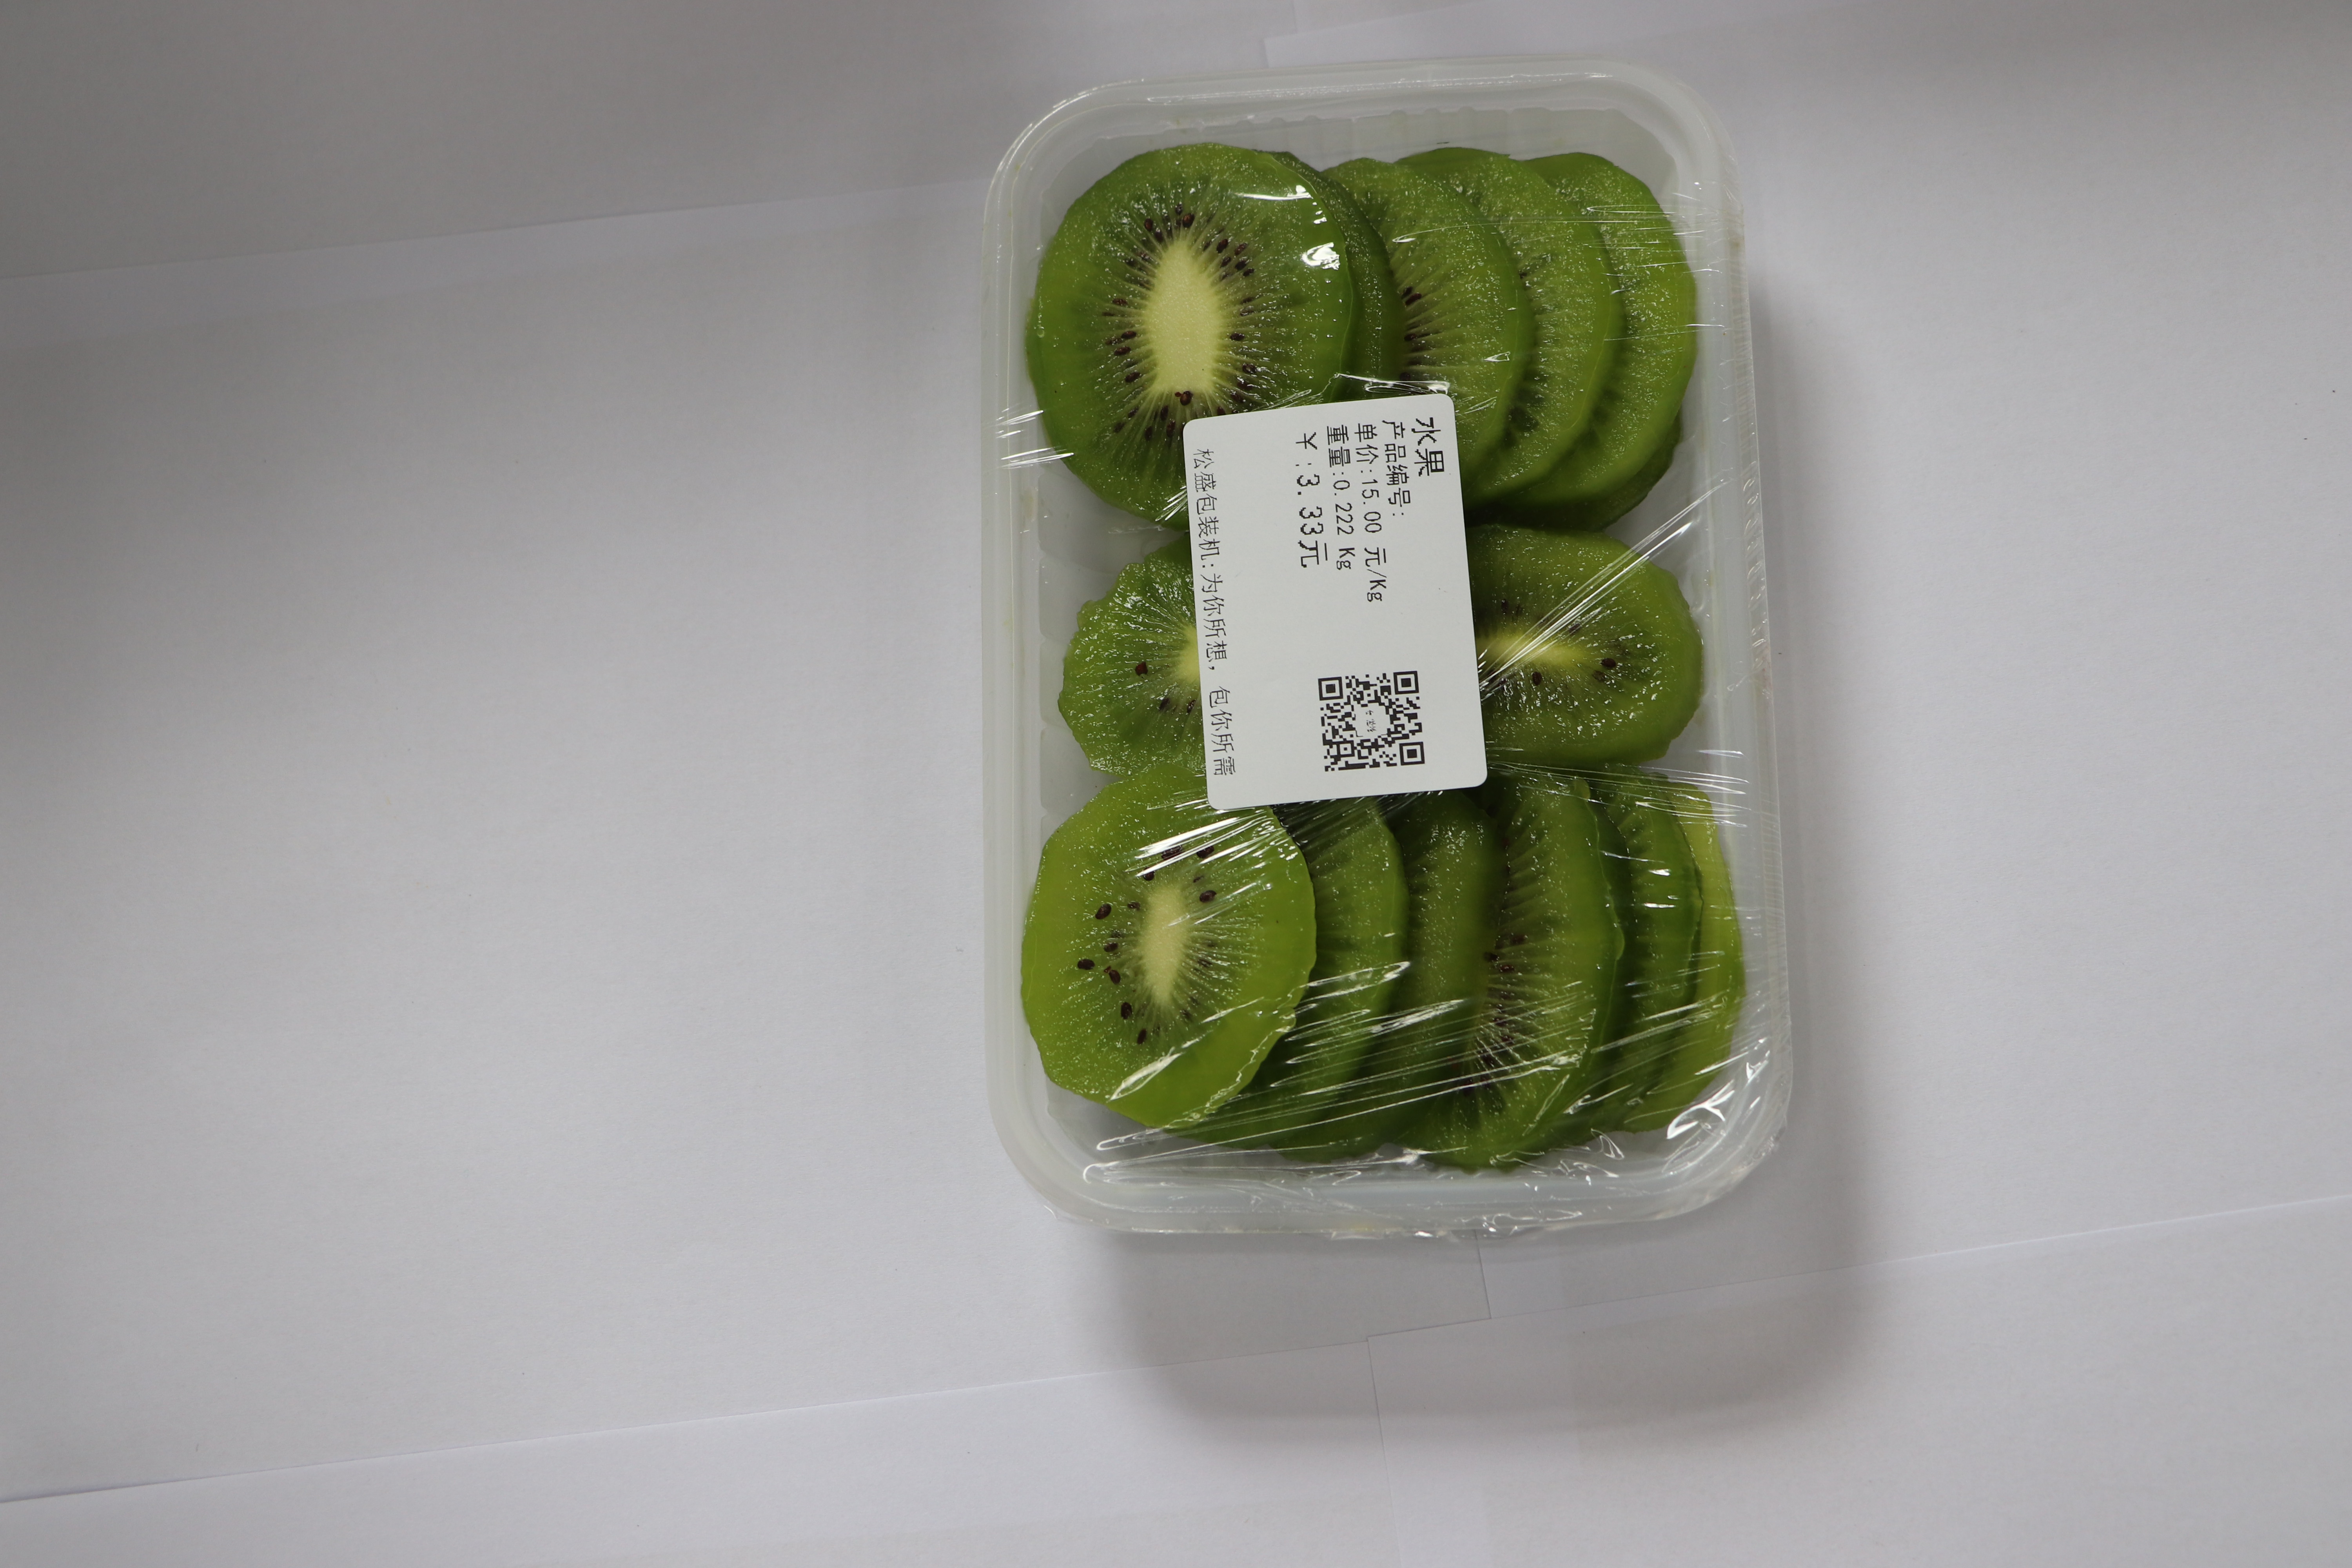 保鲜膜包装机 超市生鲜水果打包机 保鲜膜封膜机 厂家直销包邮